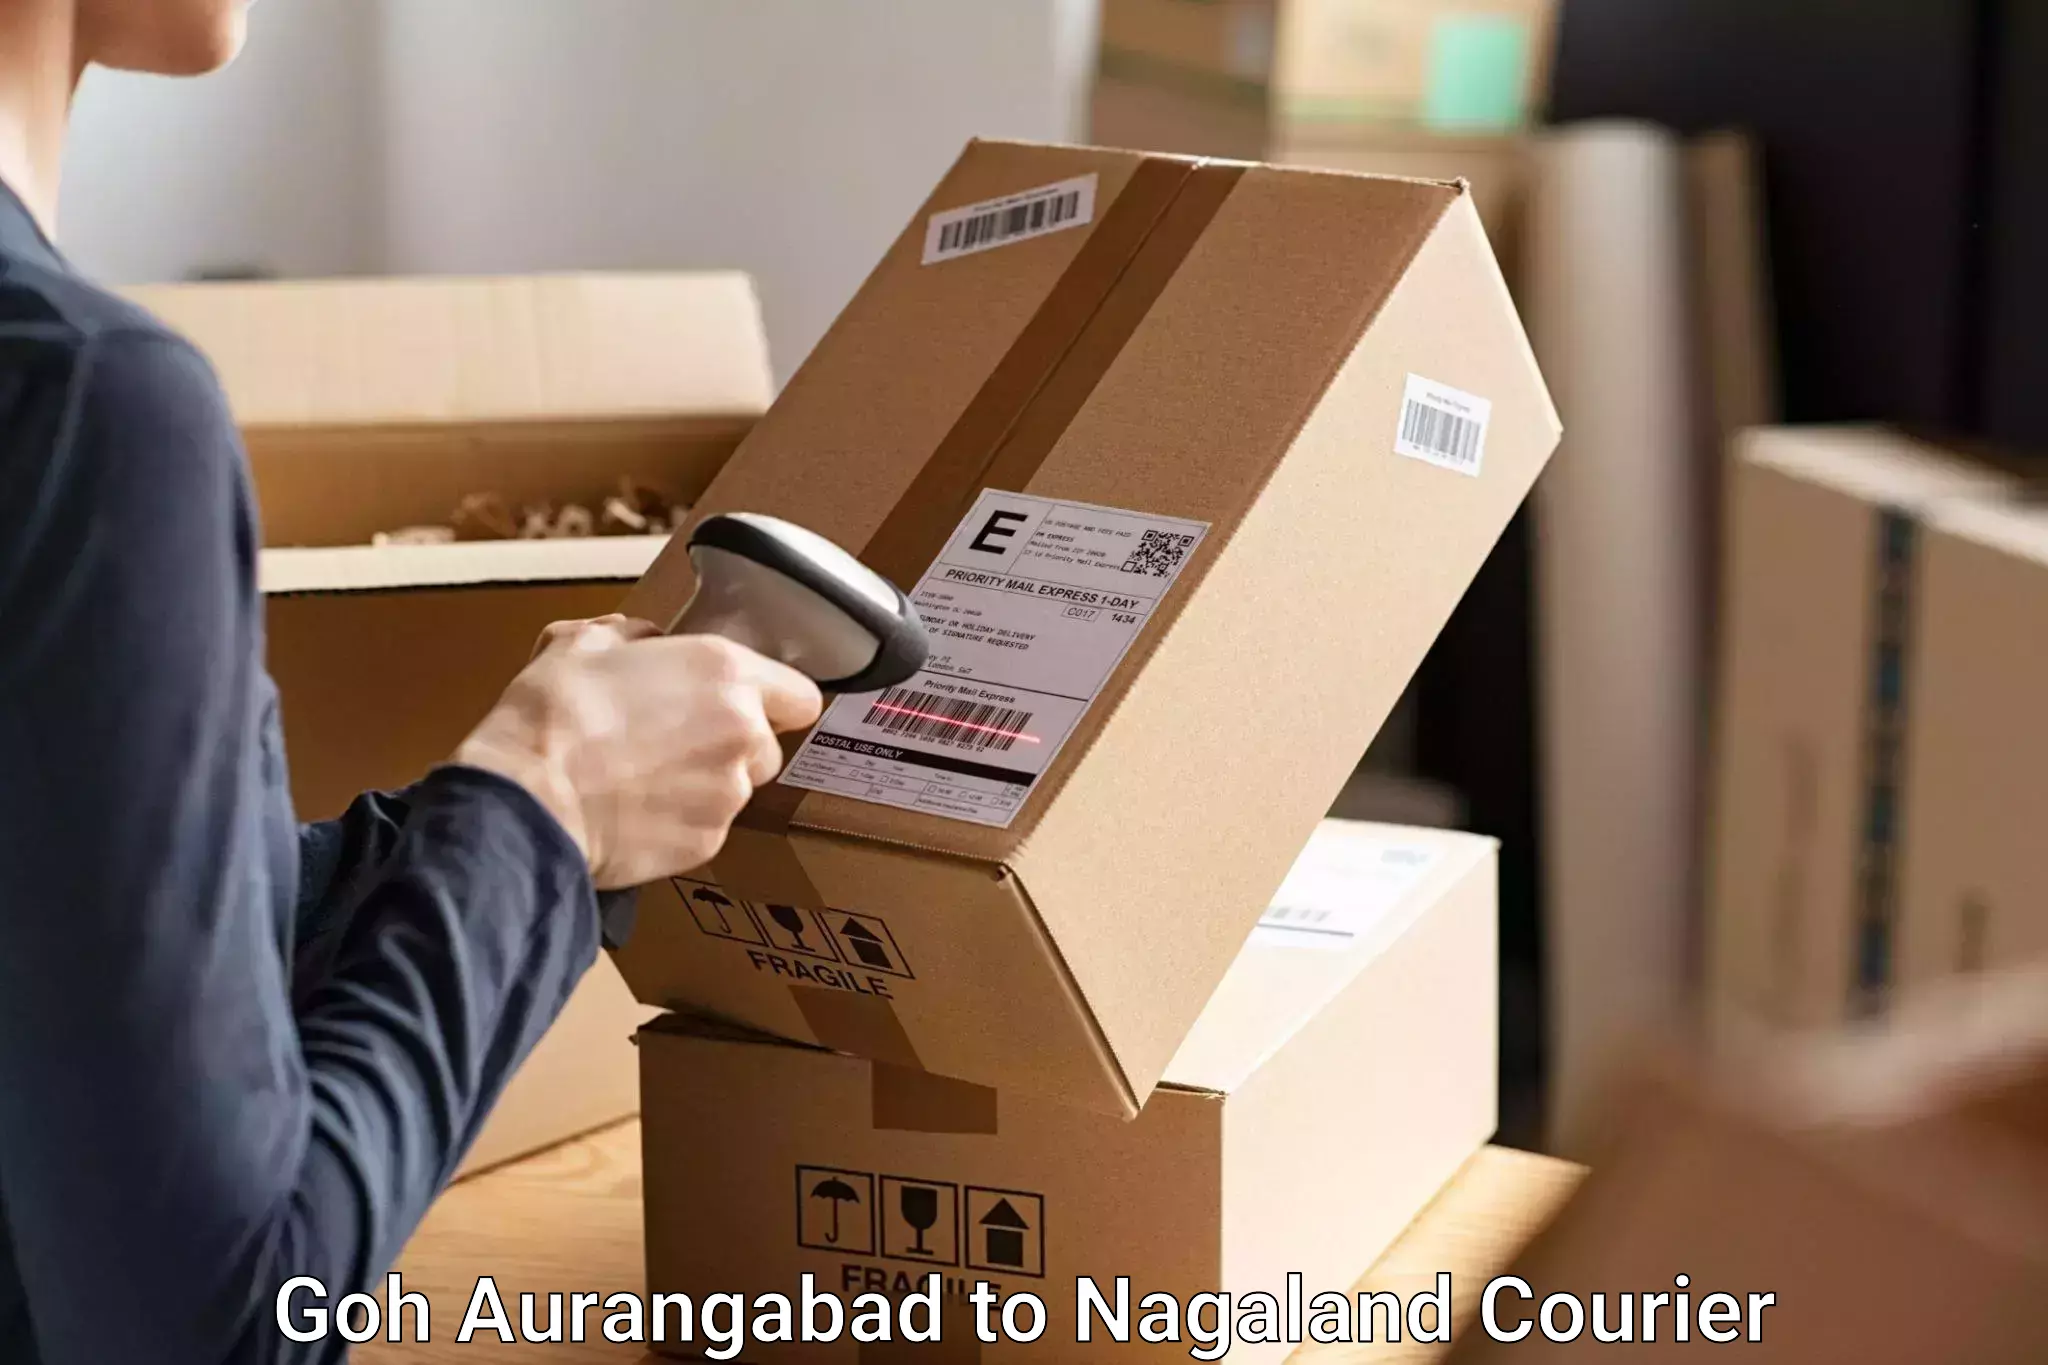 Luggage delivery optimization Goh Aurangabad to NIT Nagaland